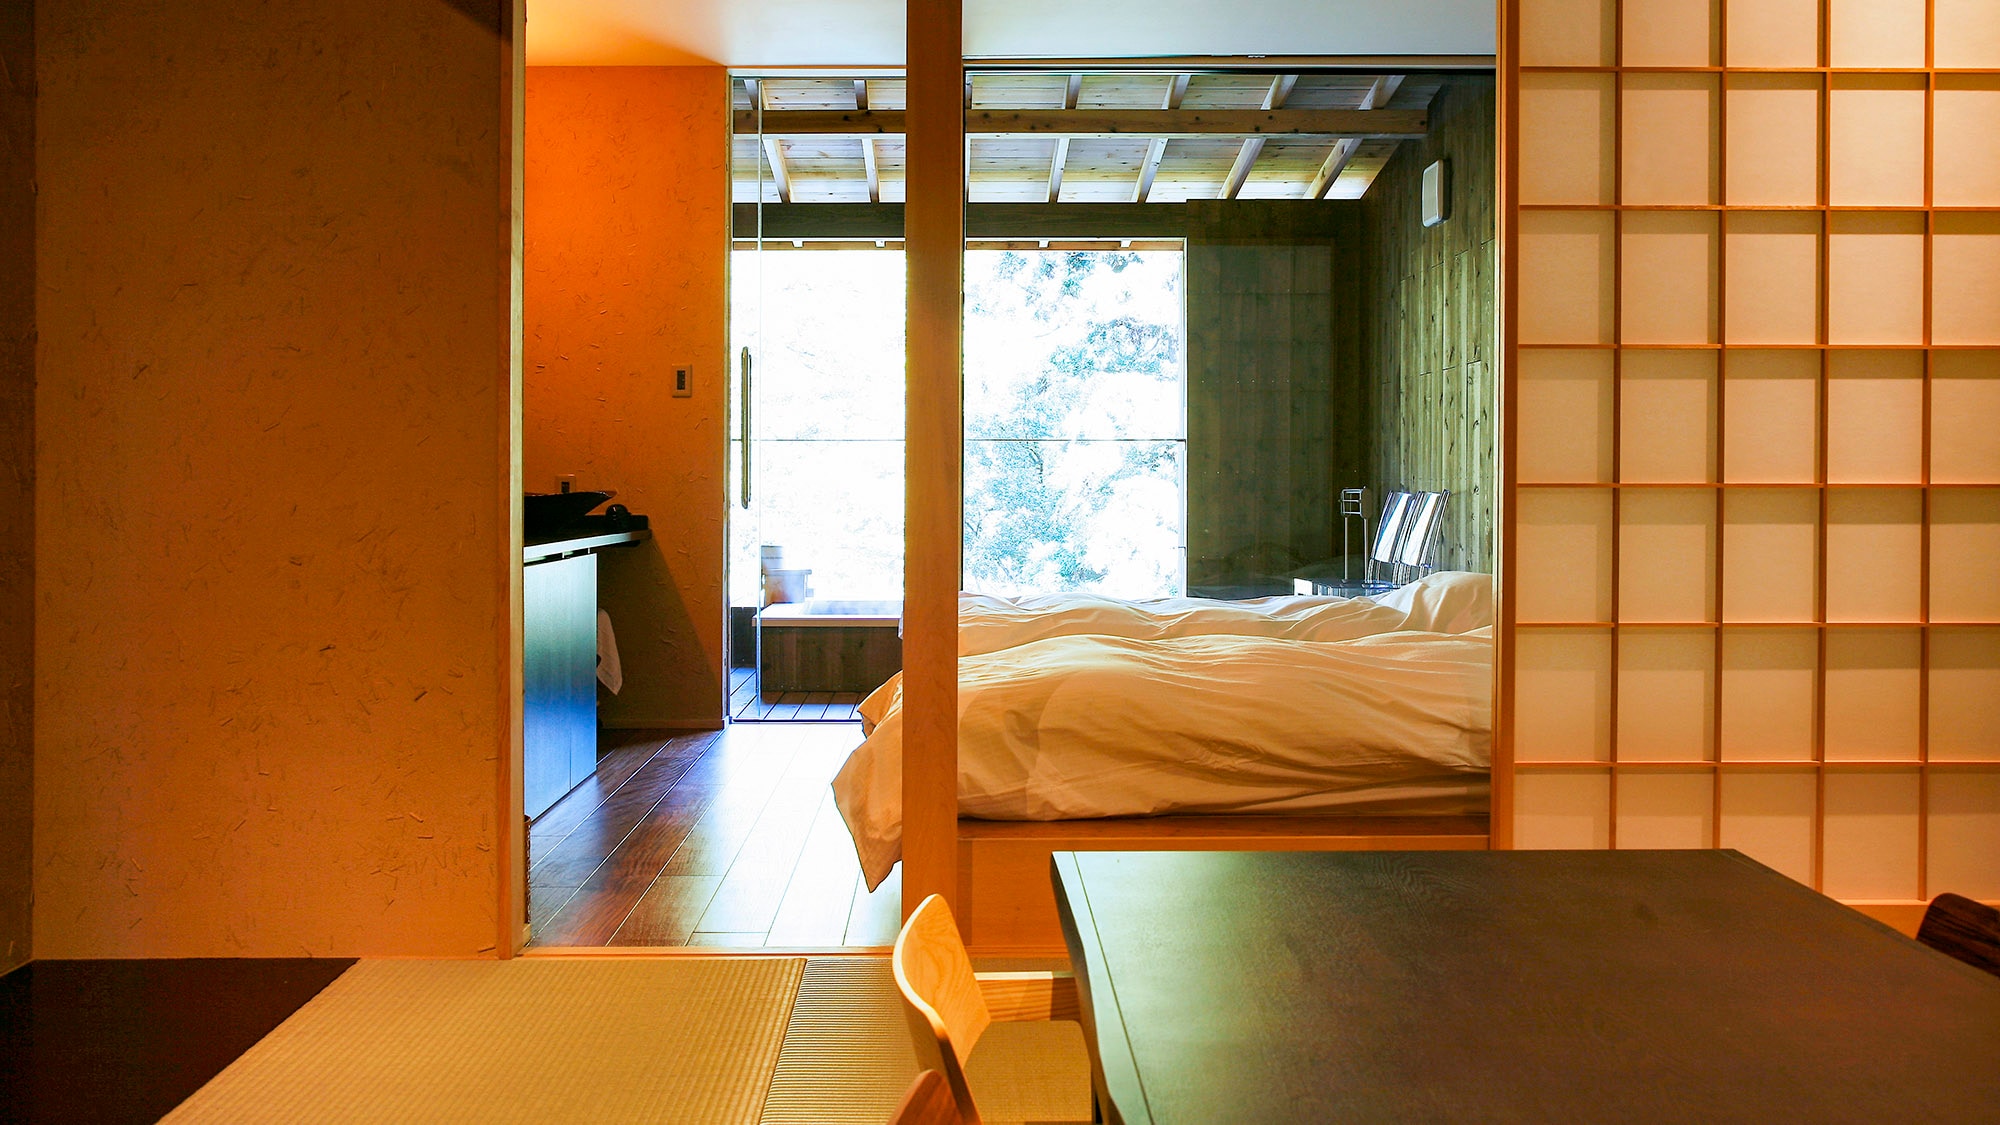 ・[ตัวอย่างห้องพัก Suou] ห้องอาบน้ำกึ่งเปิดโล่งพร้อมระเบียง + ห้องสไตล์ญี่ปุ่นขนาด 8 เสื่อทาทามิ + ห้องเตียงแฝด